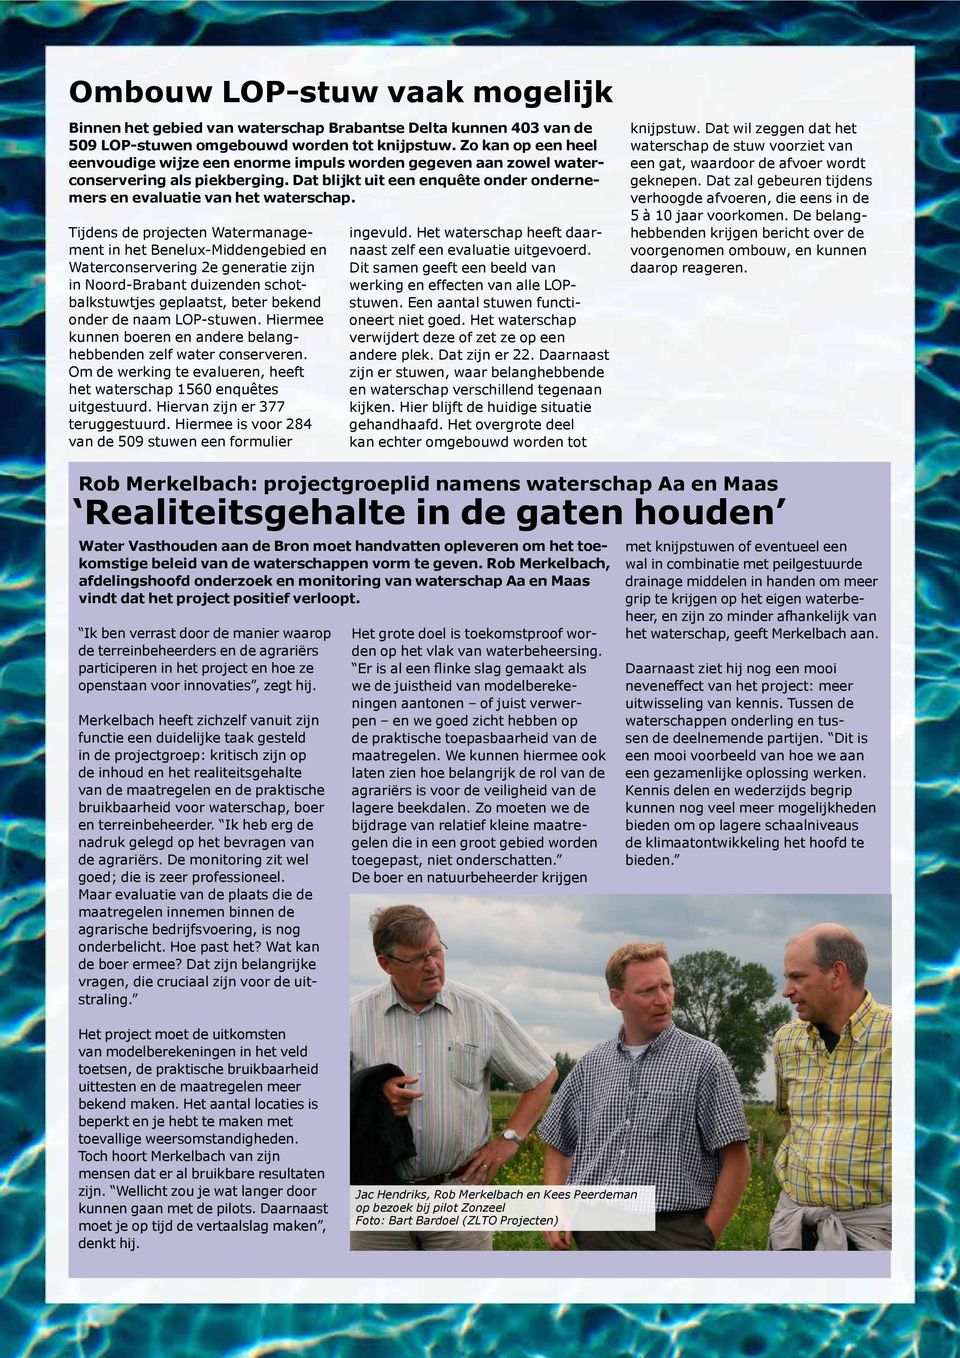 Tijdens de projecten Watermanagement in het Benelux-Middengebied en Waterconservering 2e generatie zijn in Noord-Brabant duizenden schotbalkstuwtjes geplaatst, beter bekend onder de naam LOP-stuwen.